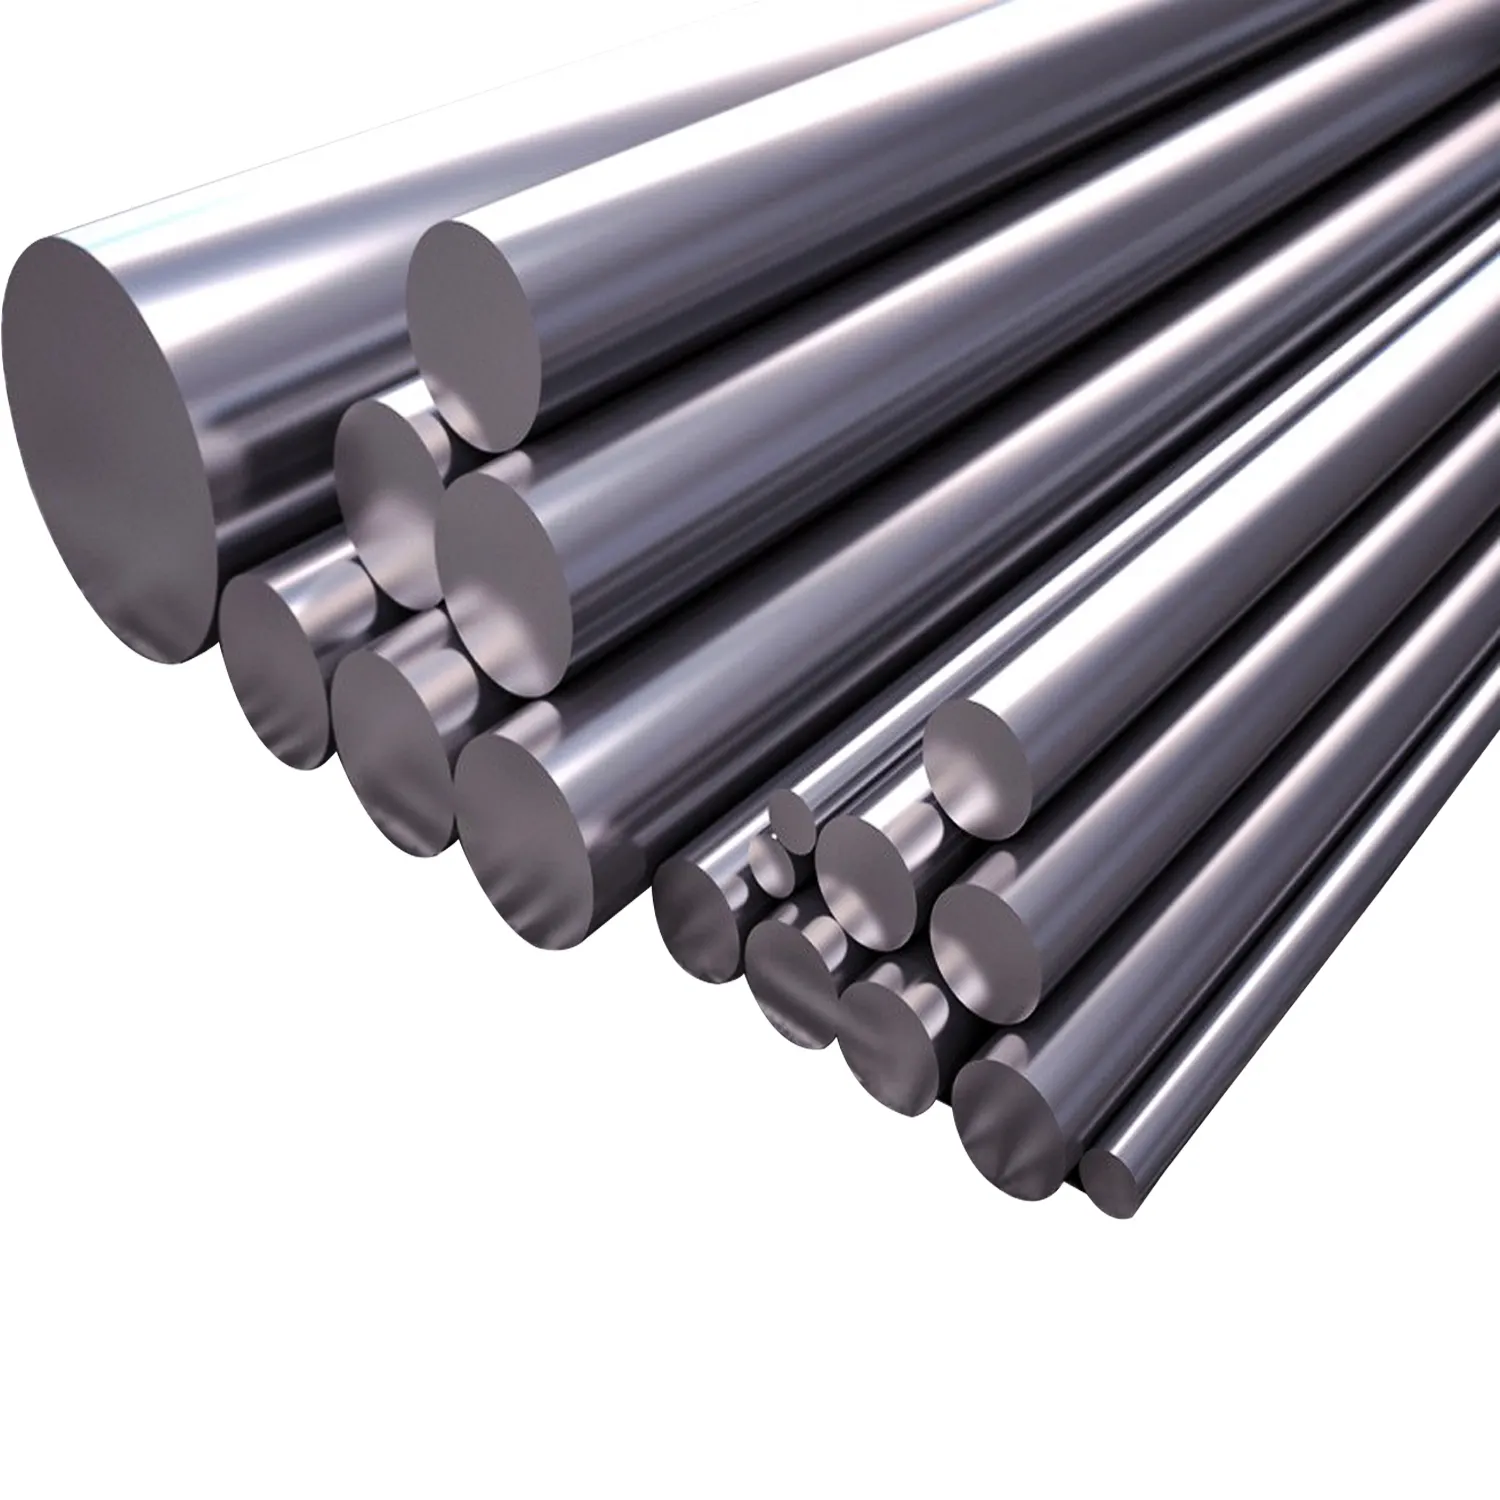 China Supplier 30mm Round Steel Tool Steel Mild Stainless Steel Round Bar Price